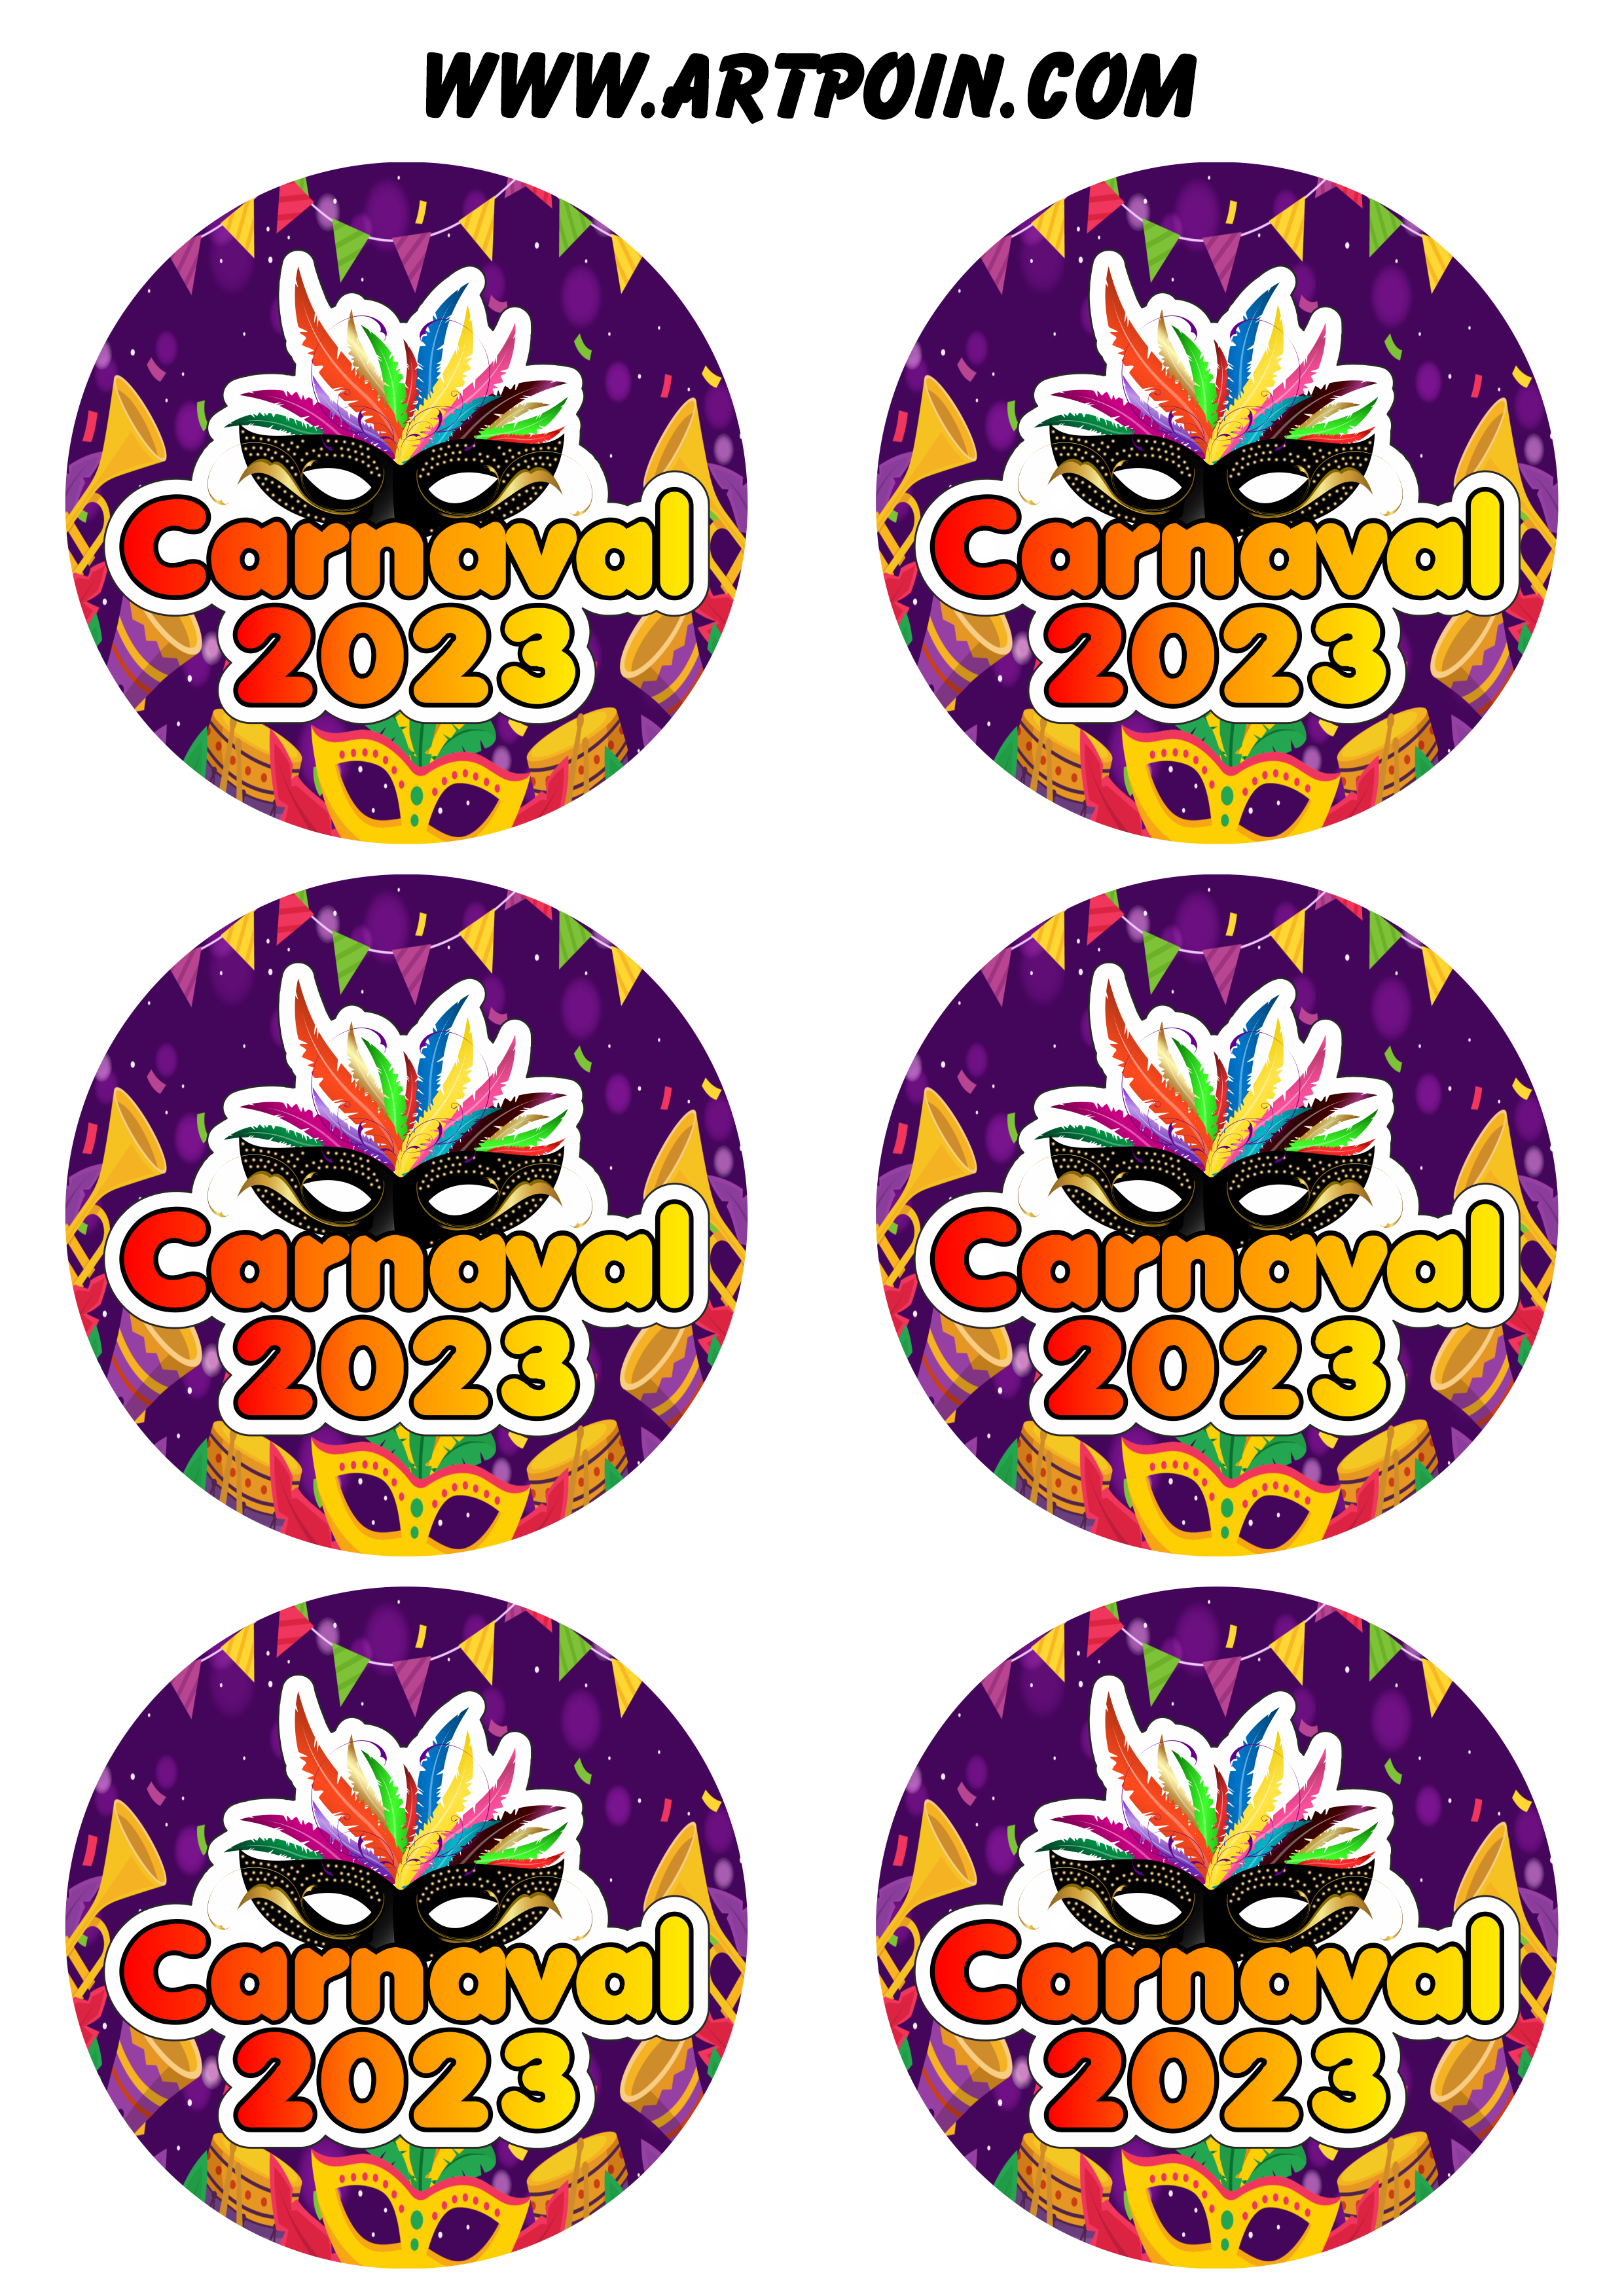 Carnaval 2023 adesivos stickers redondos pronto para imprimir e decorar 6 imagens png